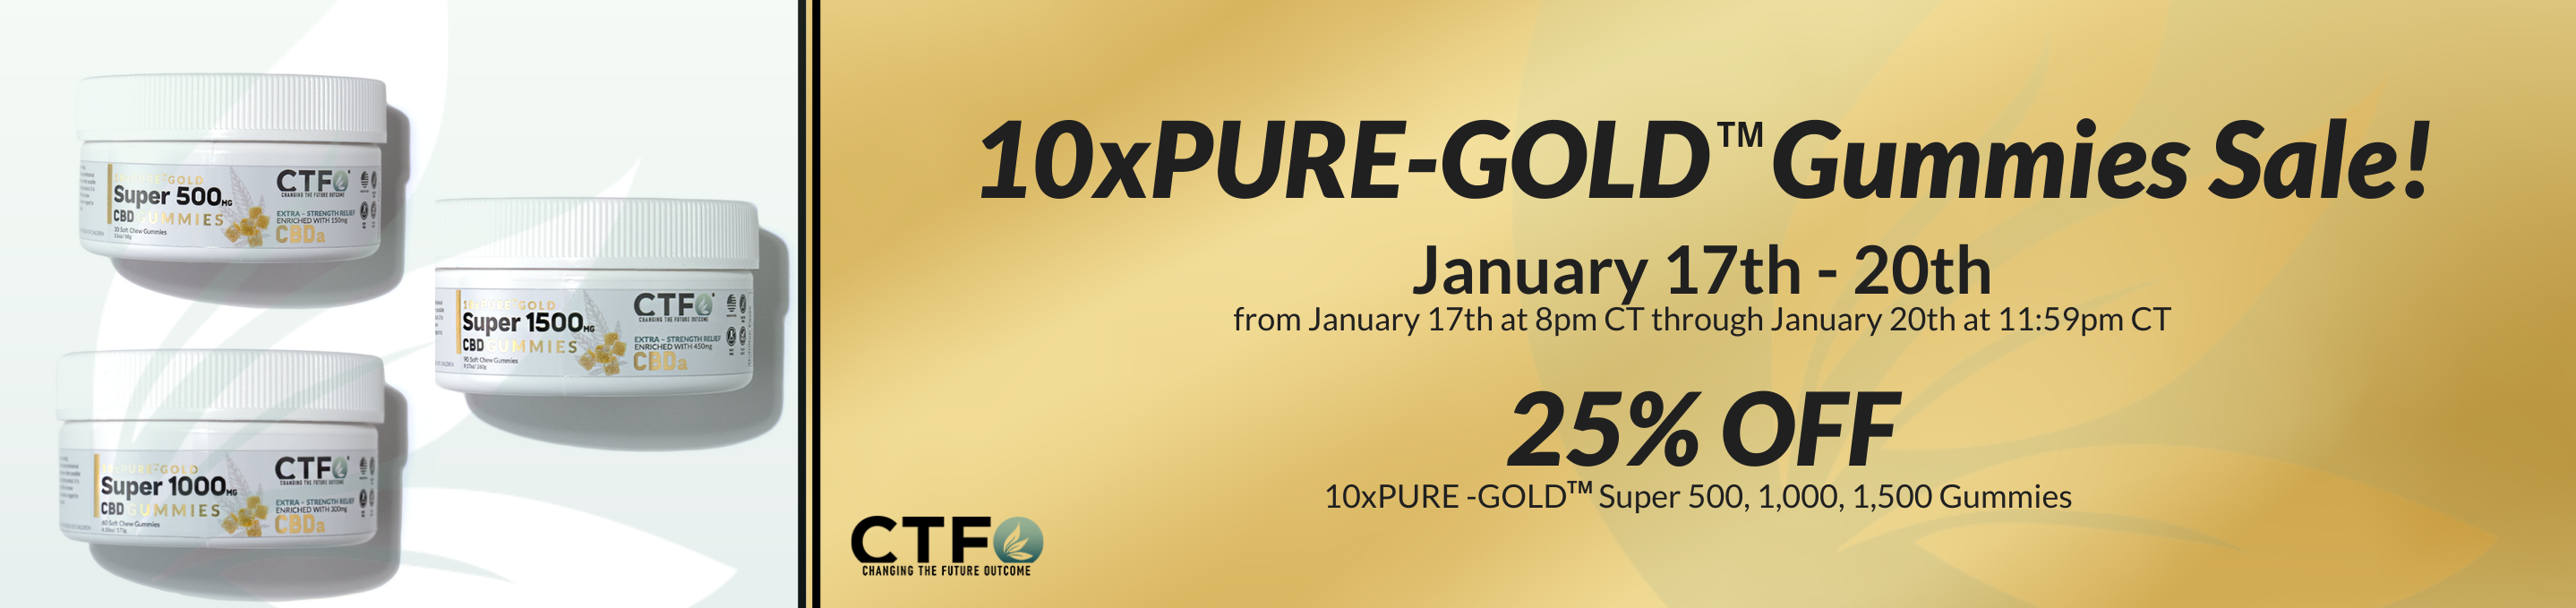 CTFO 10xPURE-GOLD Gummies Sale Link